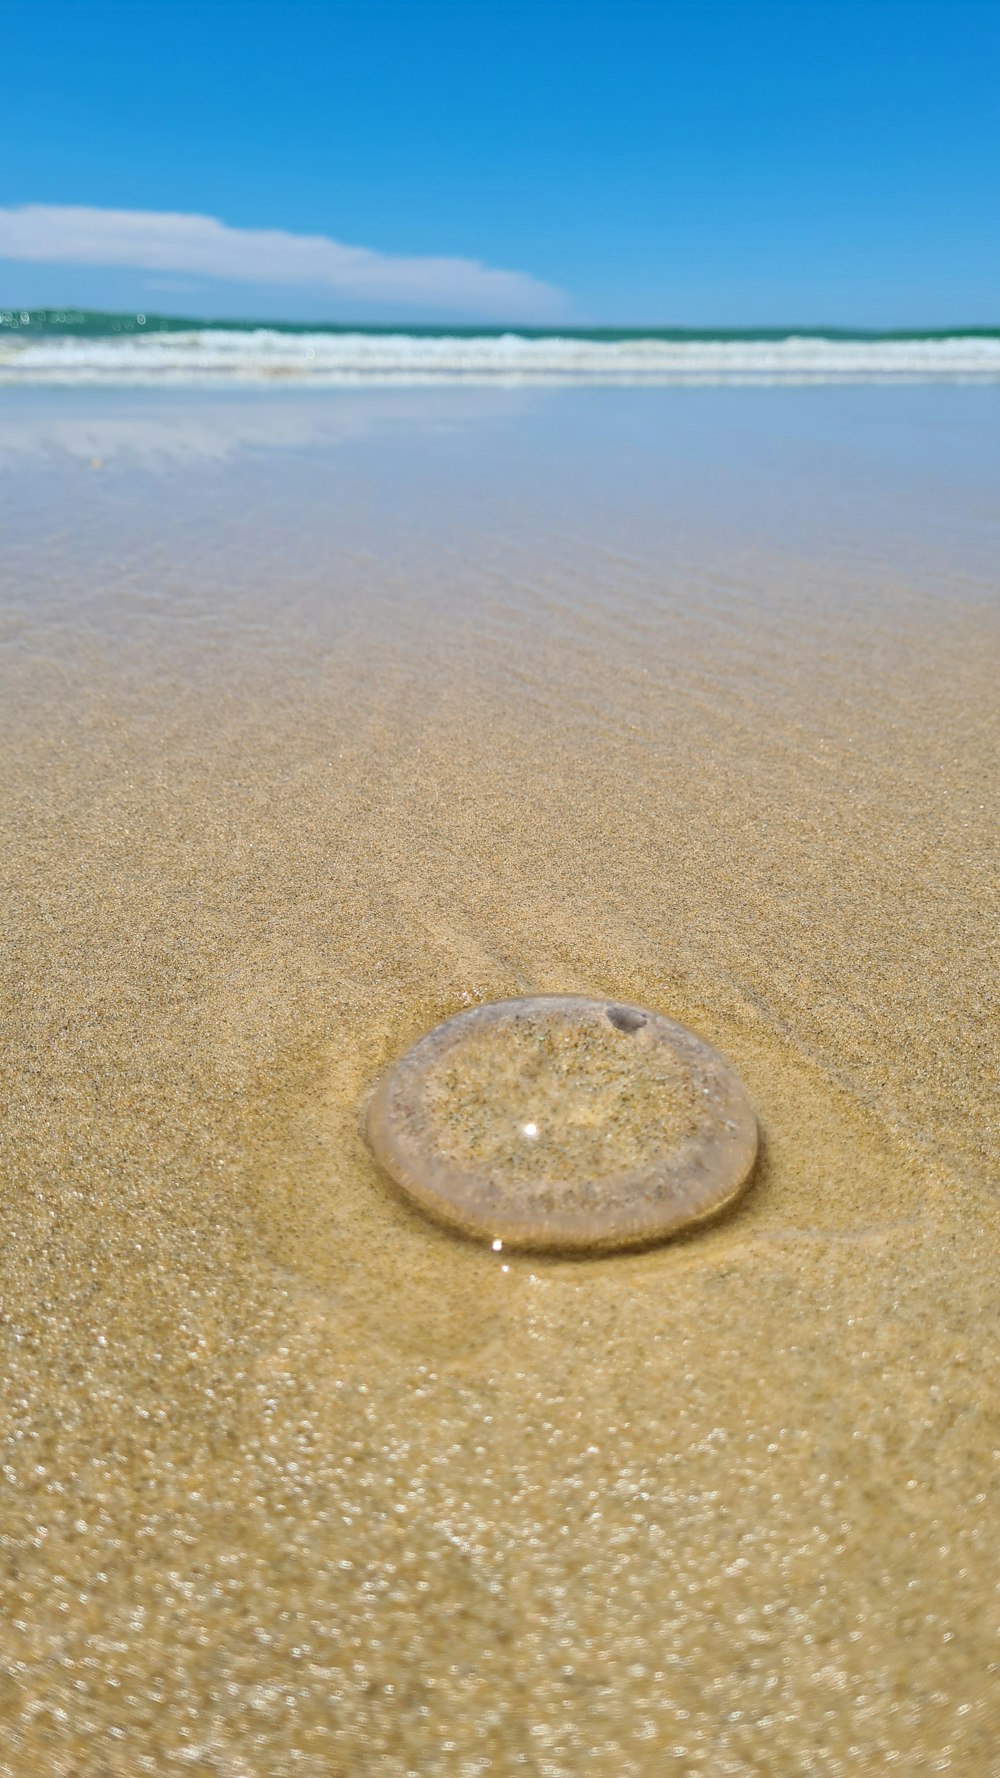 Ein runder Gegenstand im Sand am Strand